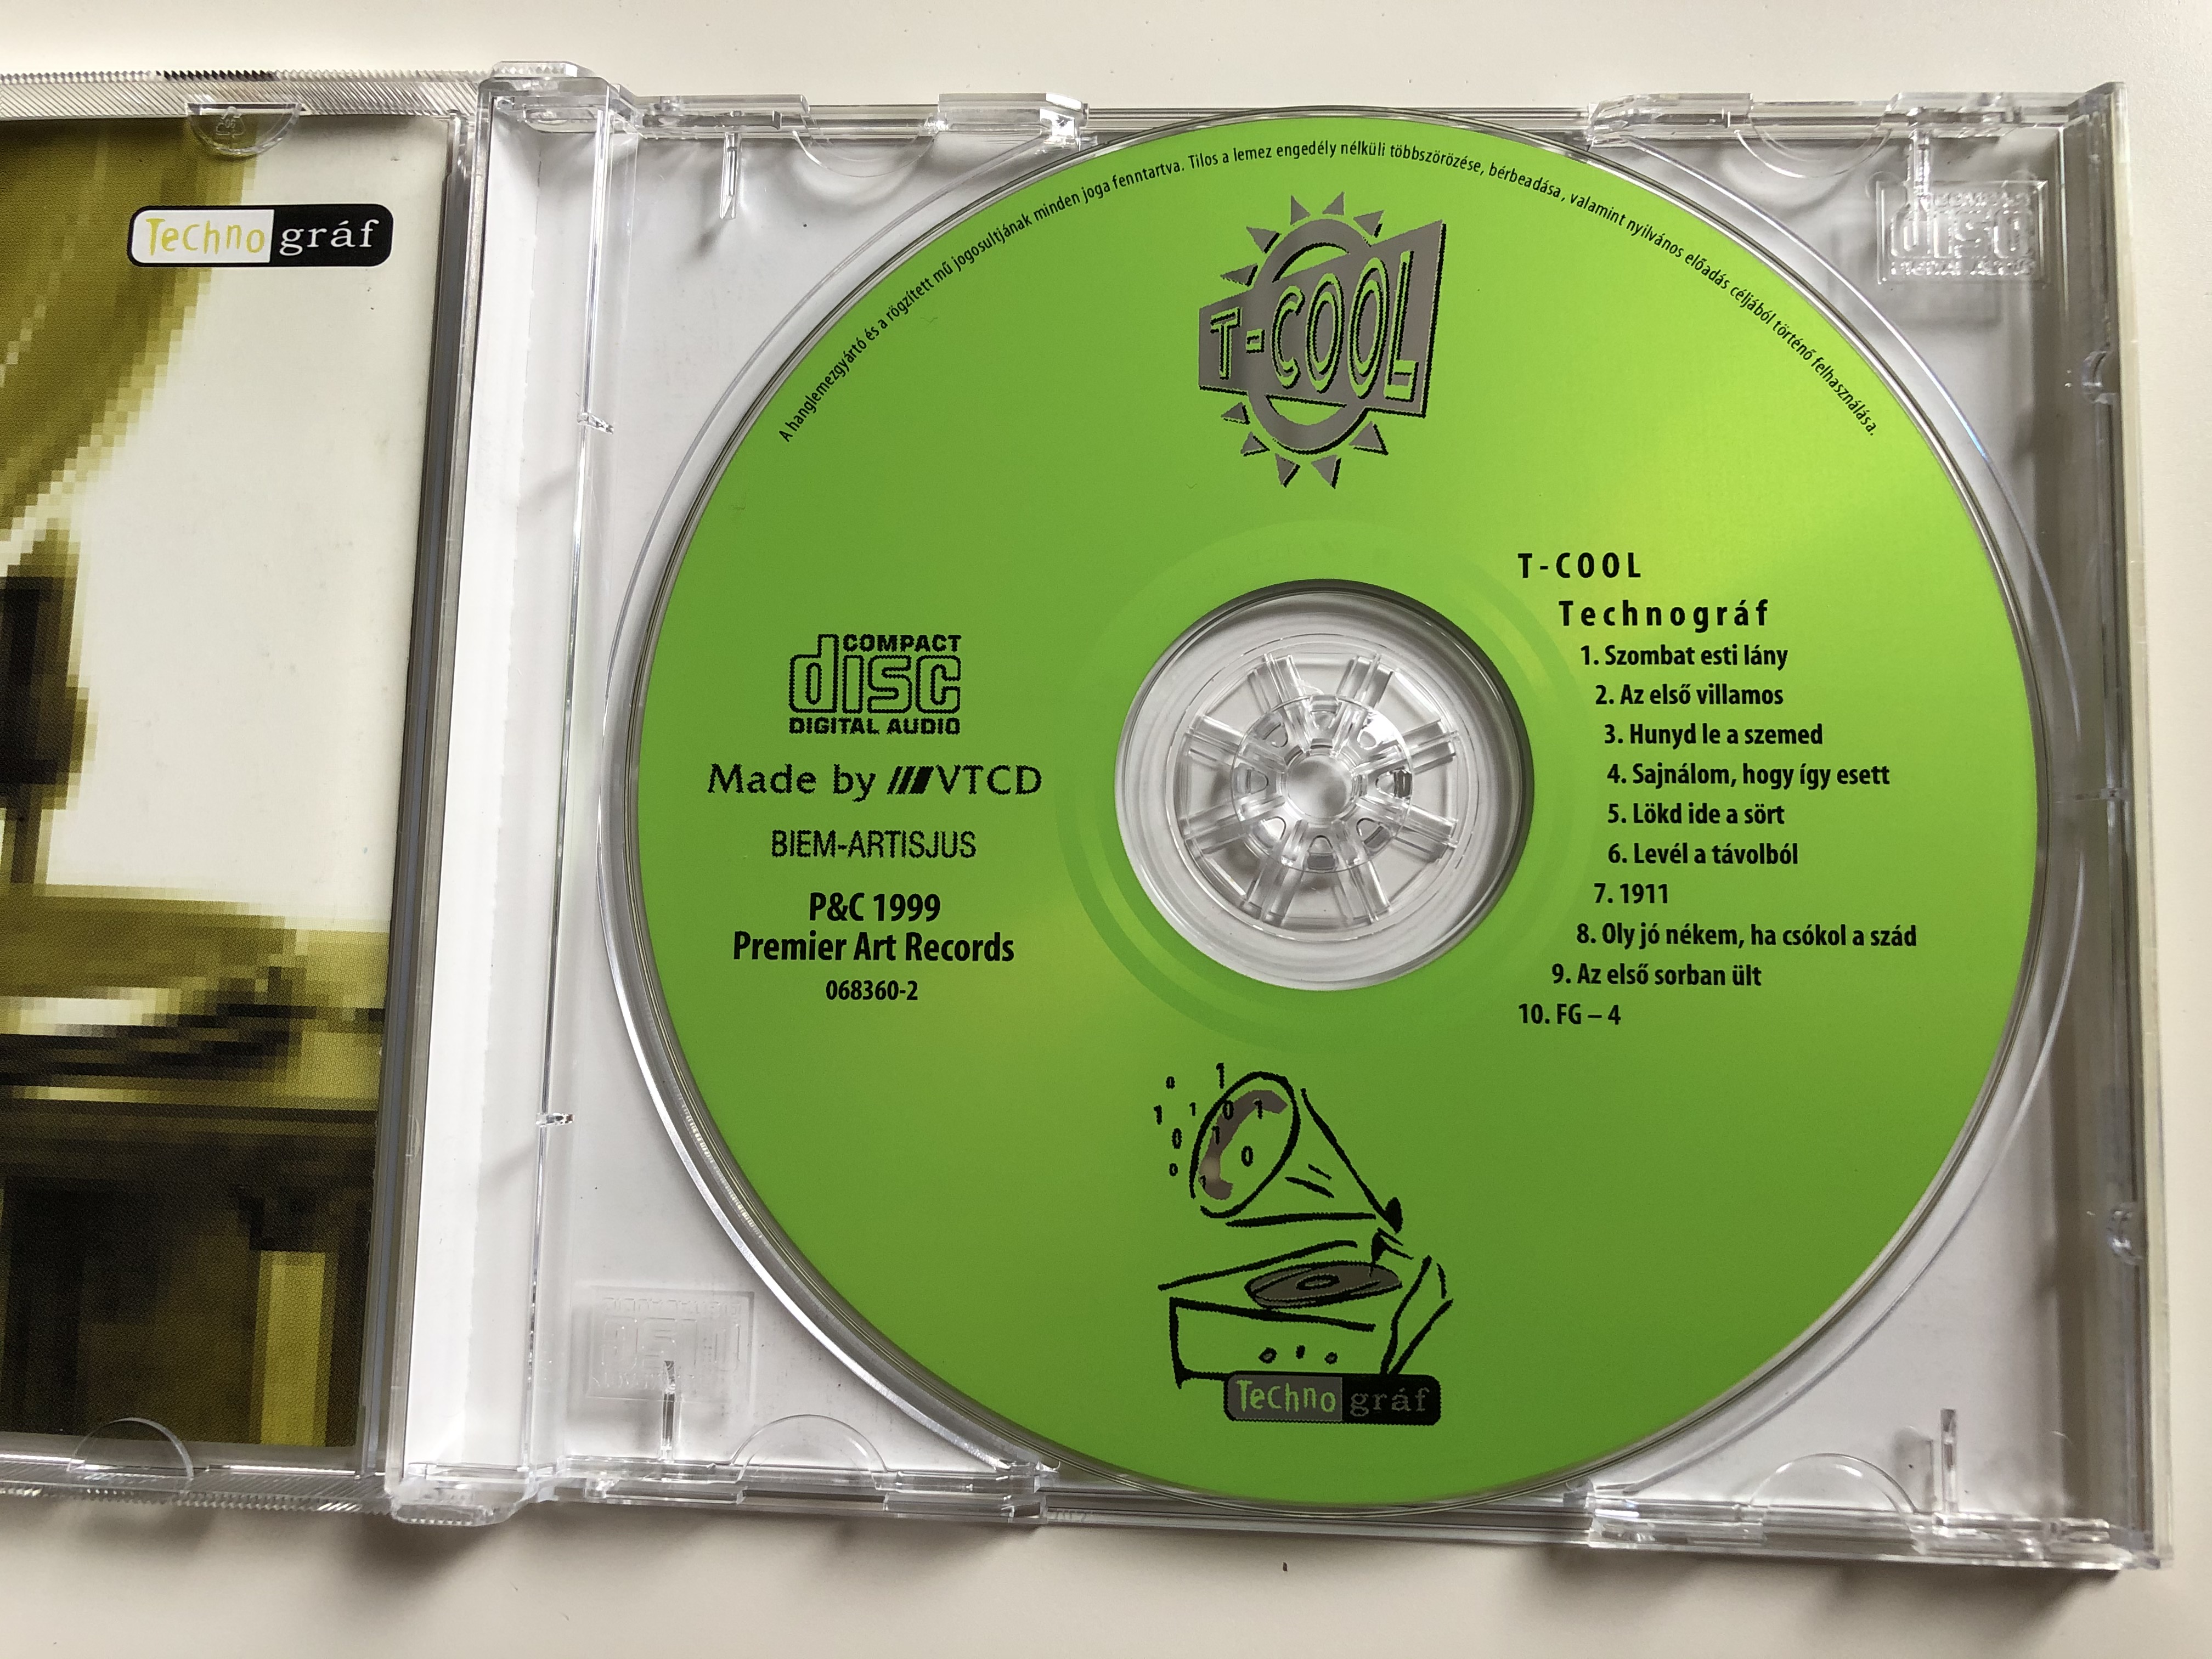 technogr-f-t-cool-premier-art-records-audio-cd-1999-068360-2-4-.jpg